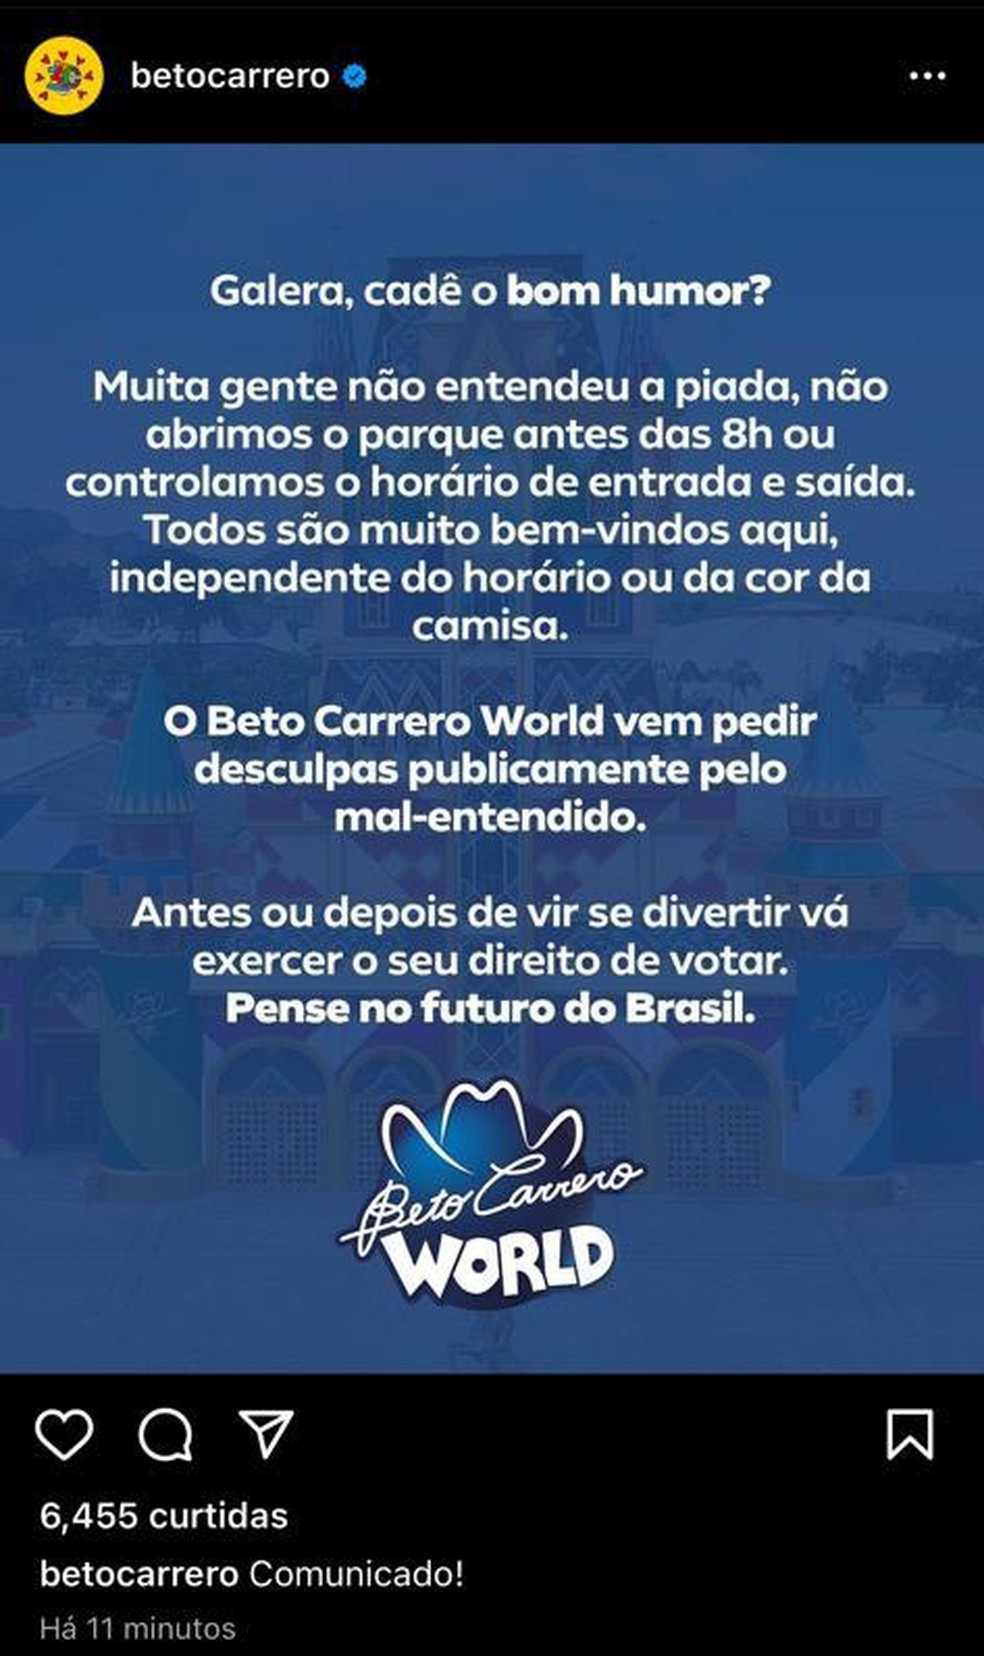 Beto Carrero World - Informações e o que não deixar de fazer